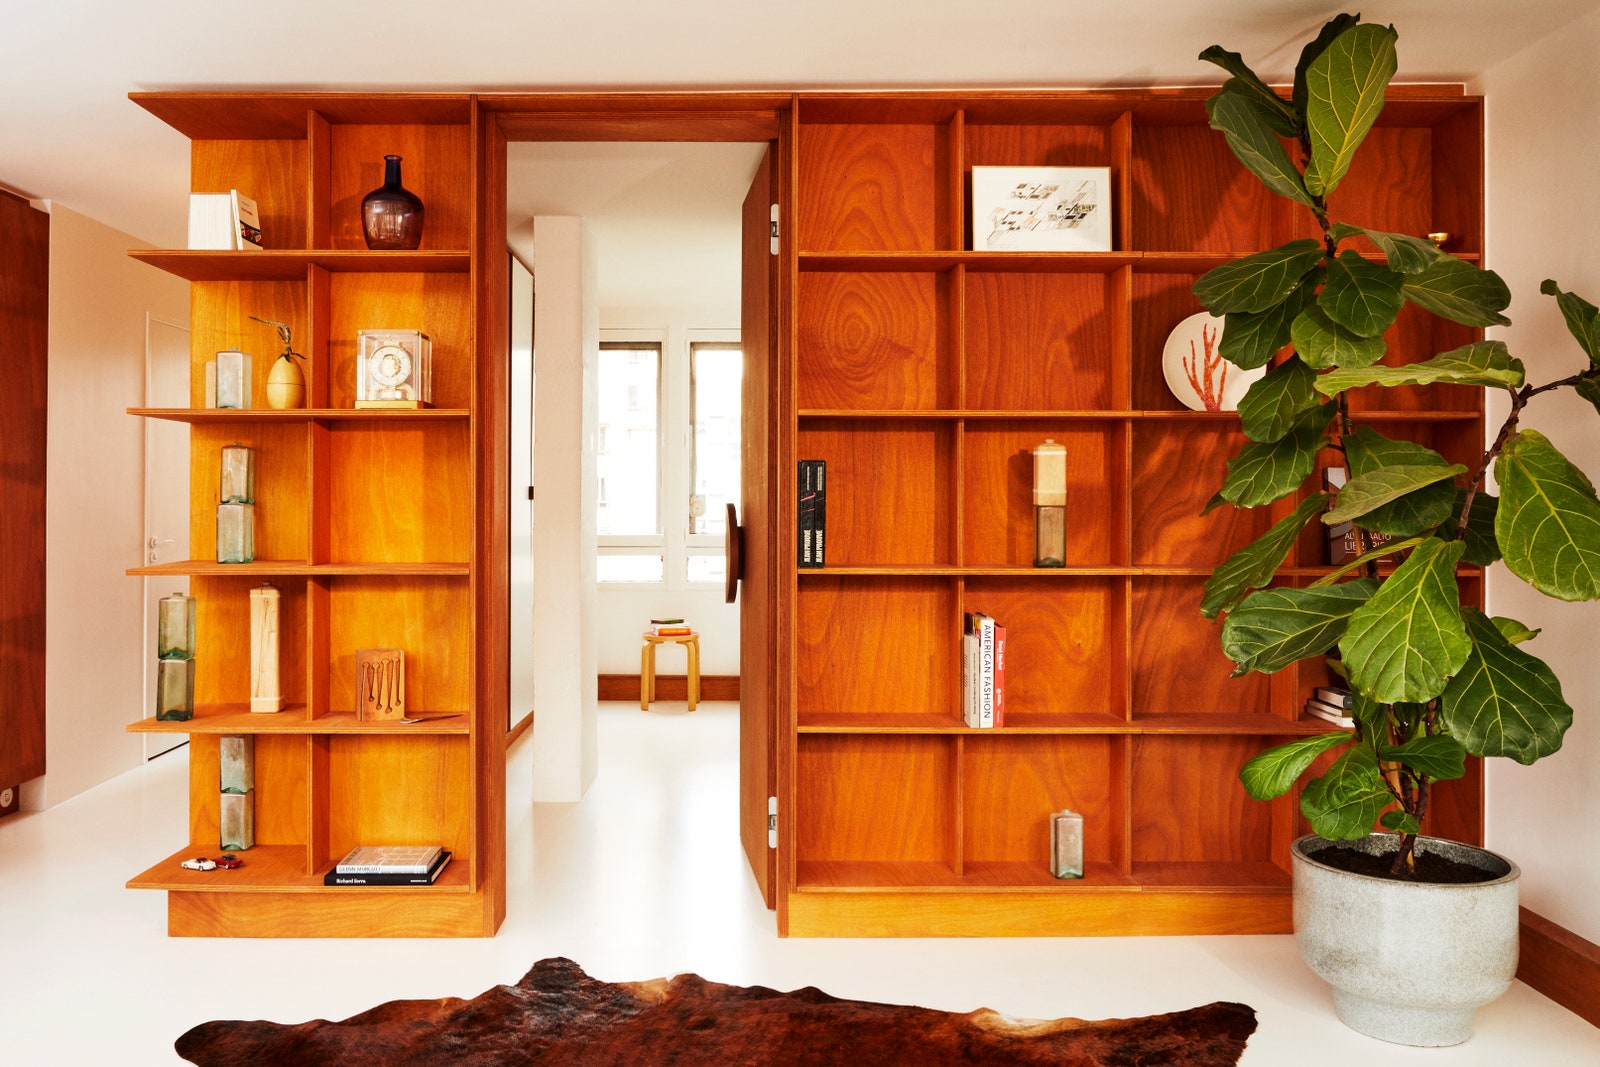 L'image peut contenir des meubles étagère bois dur design d'intérieur intérieur placard placard et bibliothèque